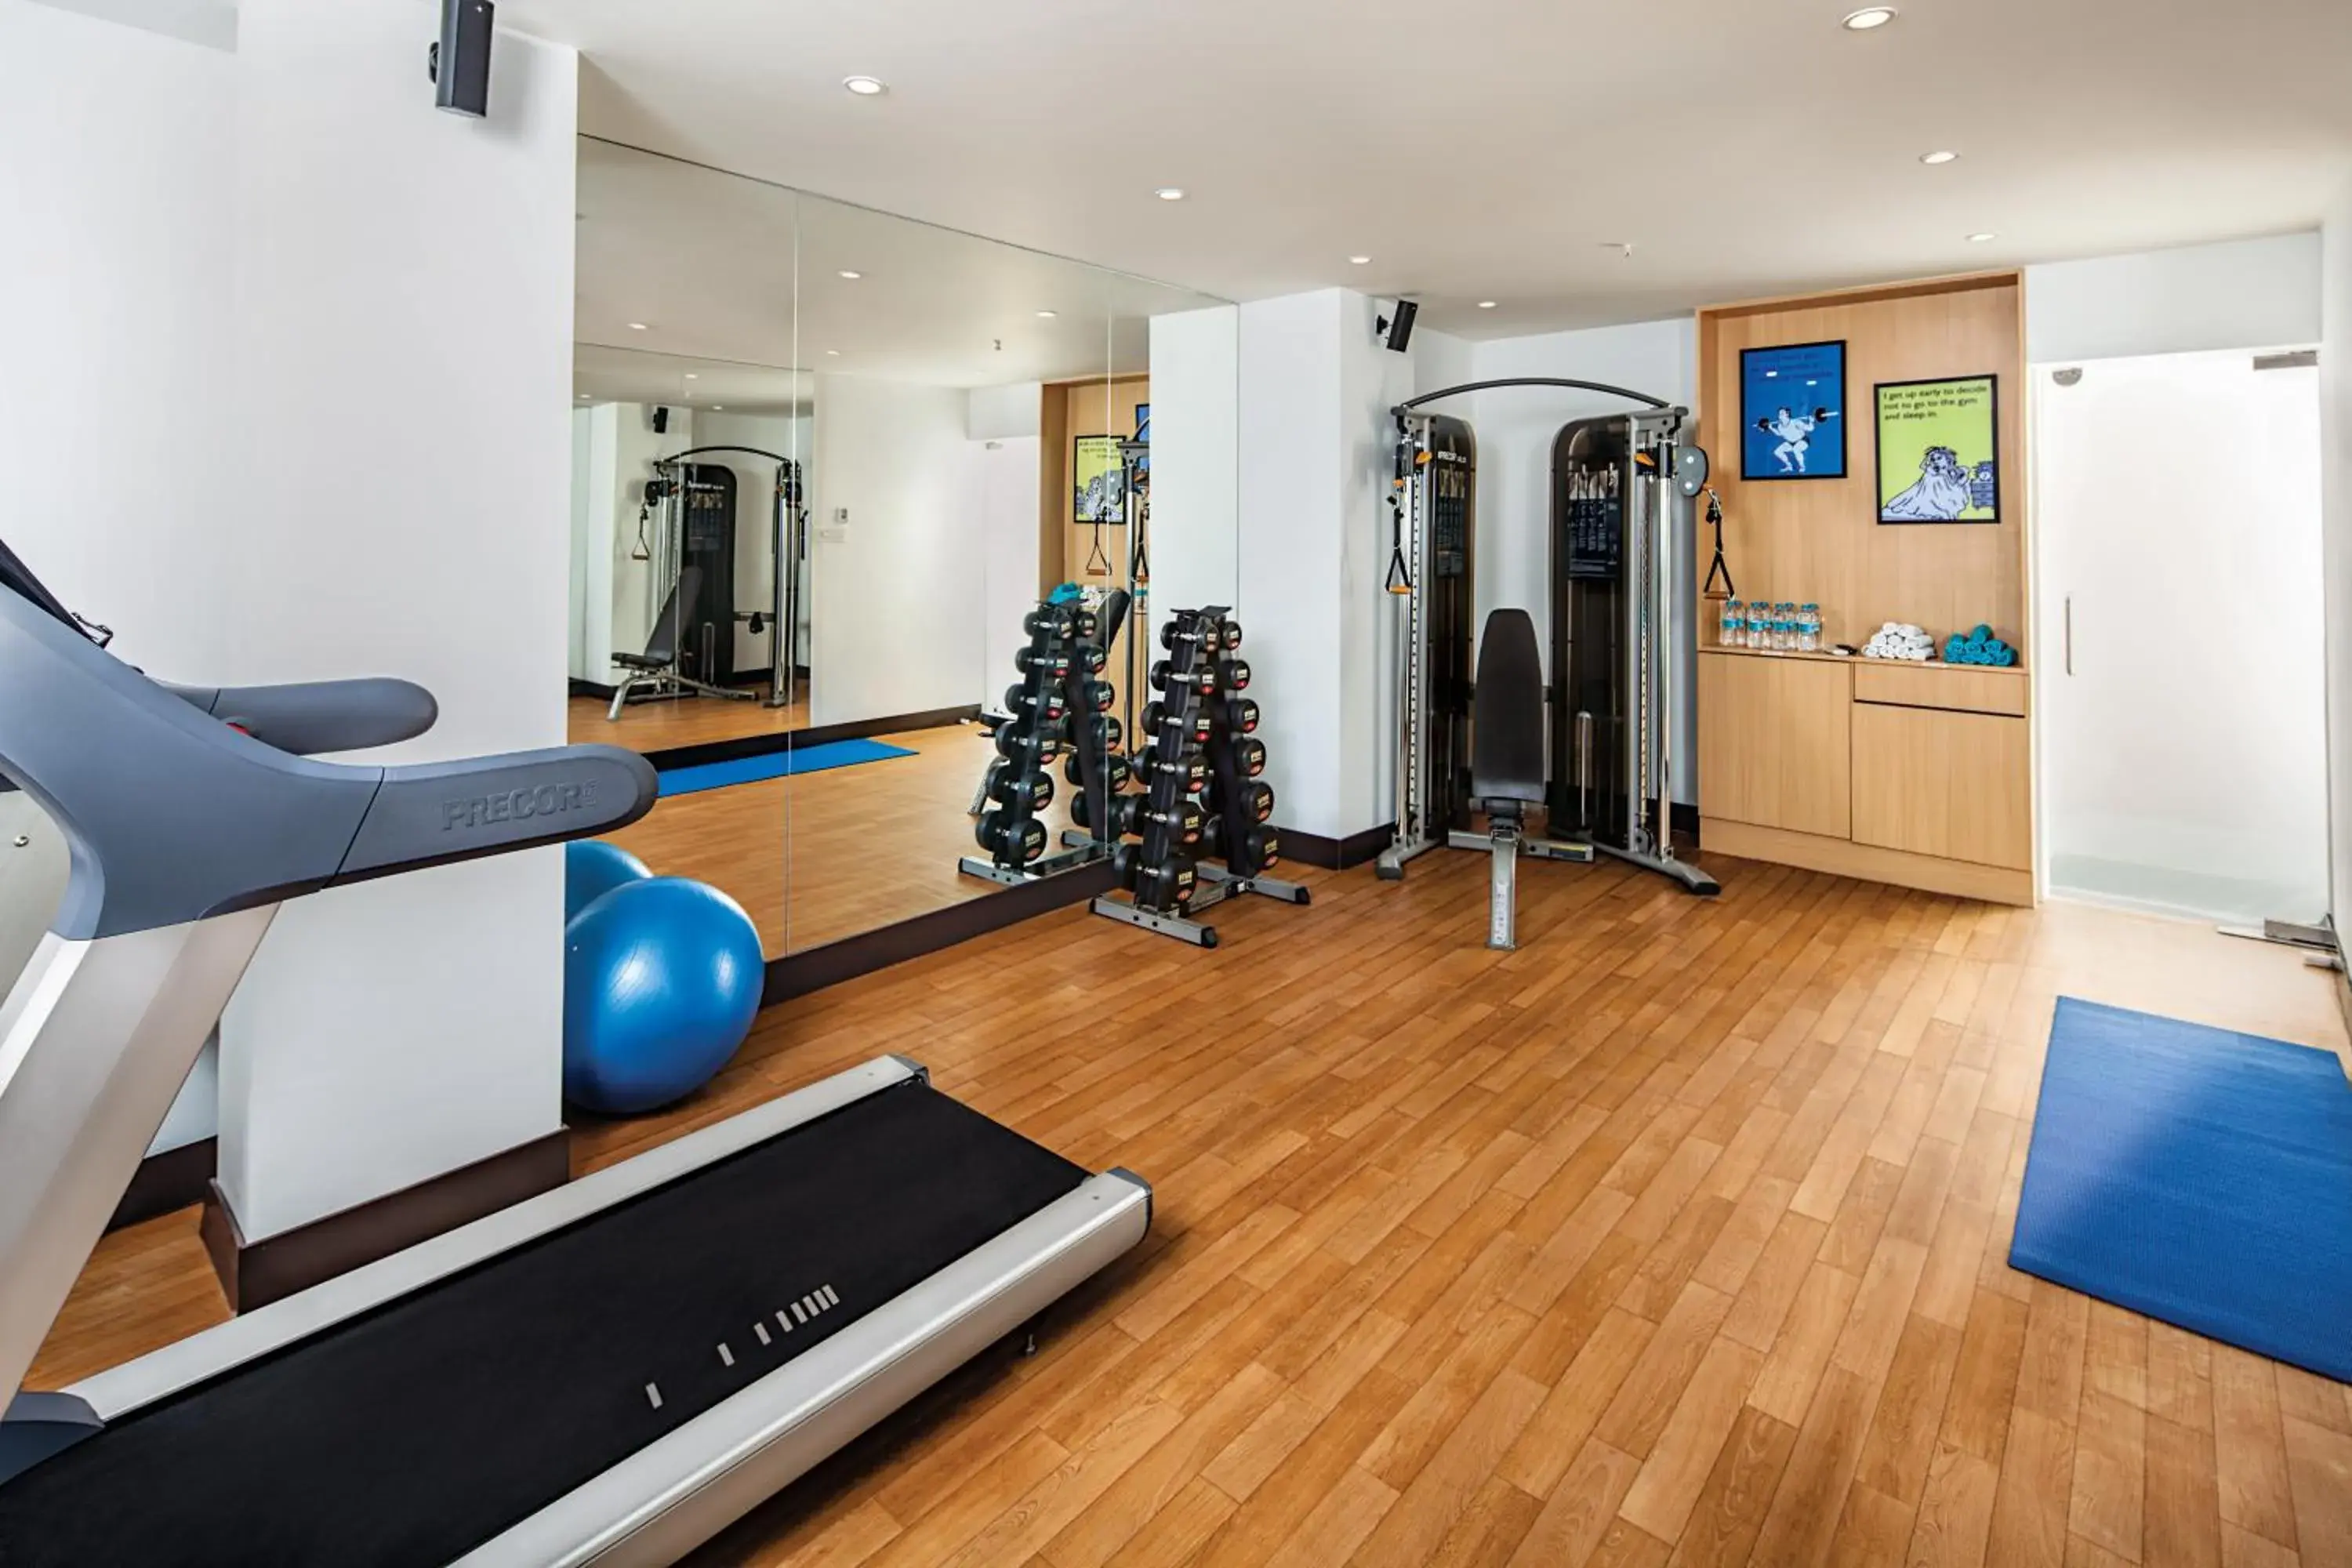 Fitness centre/facilities, Fitness Center/Facilities in Lemon Tree Hotel, Vadodara